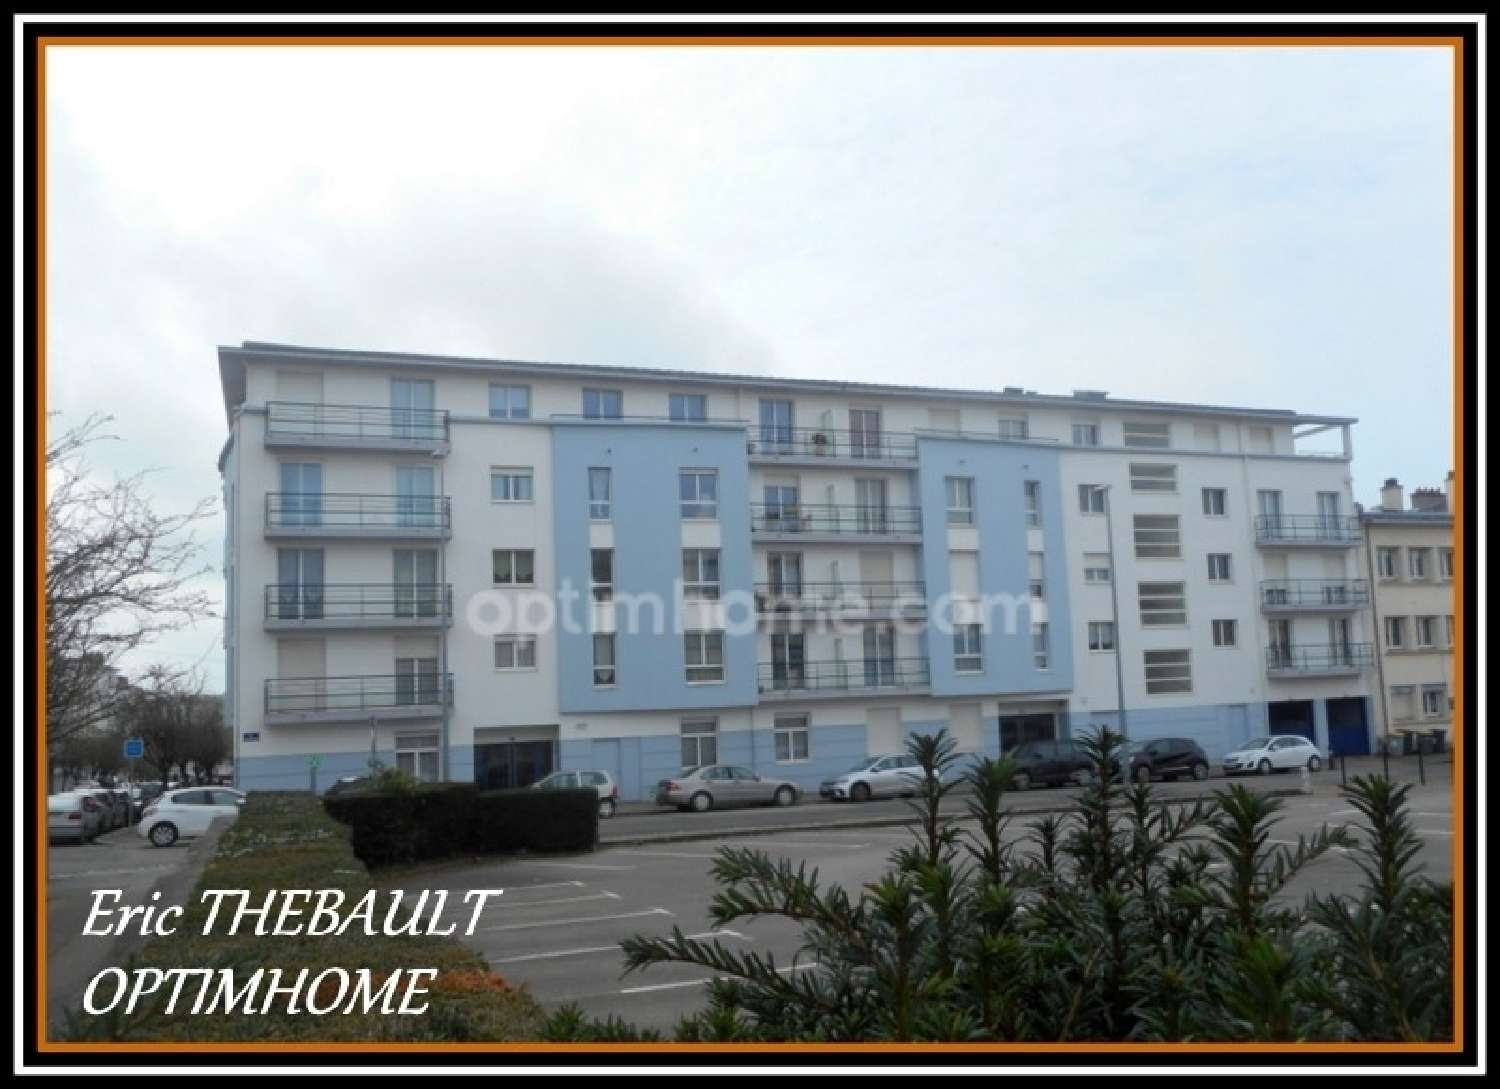  for sale apartment Brest Finistère 2